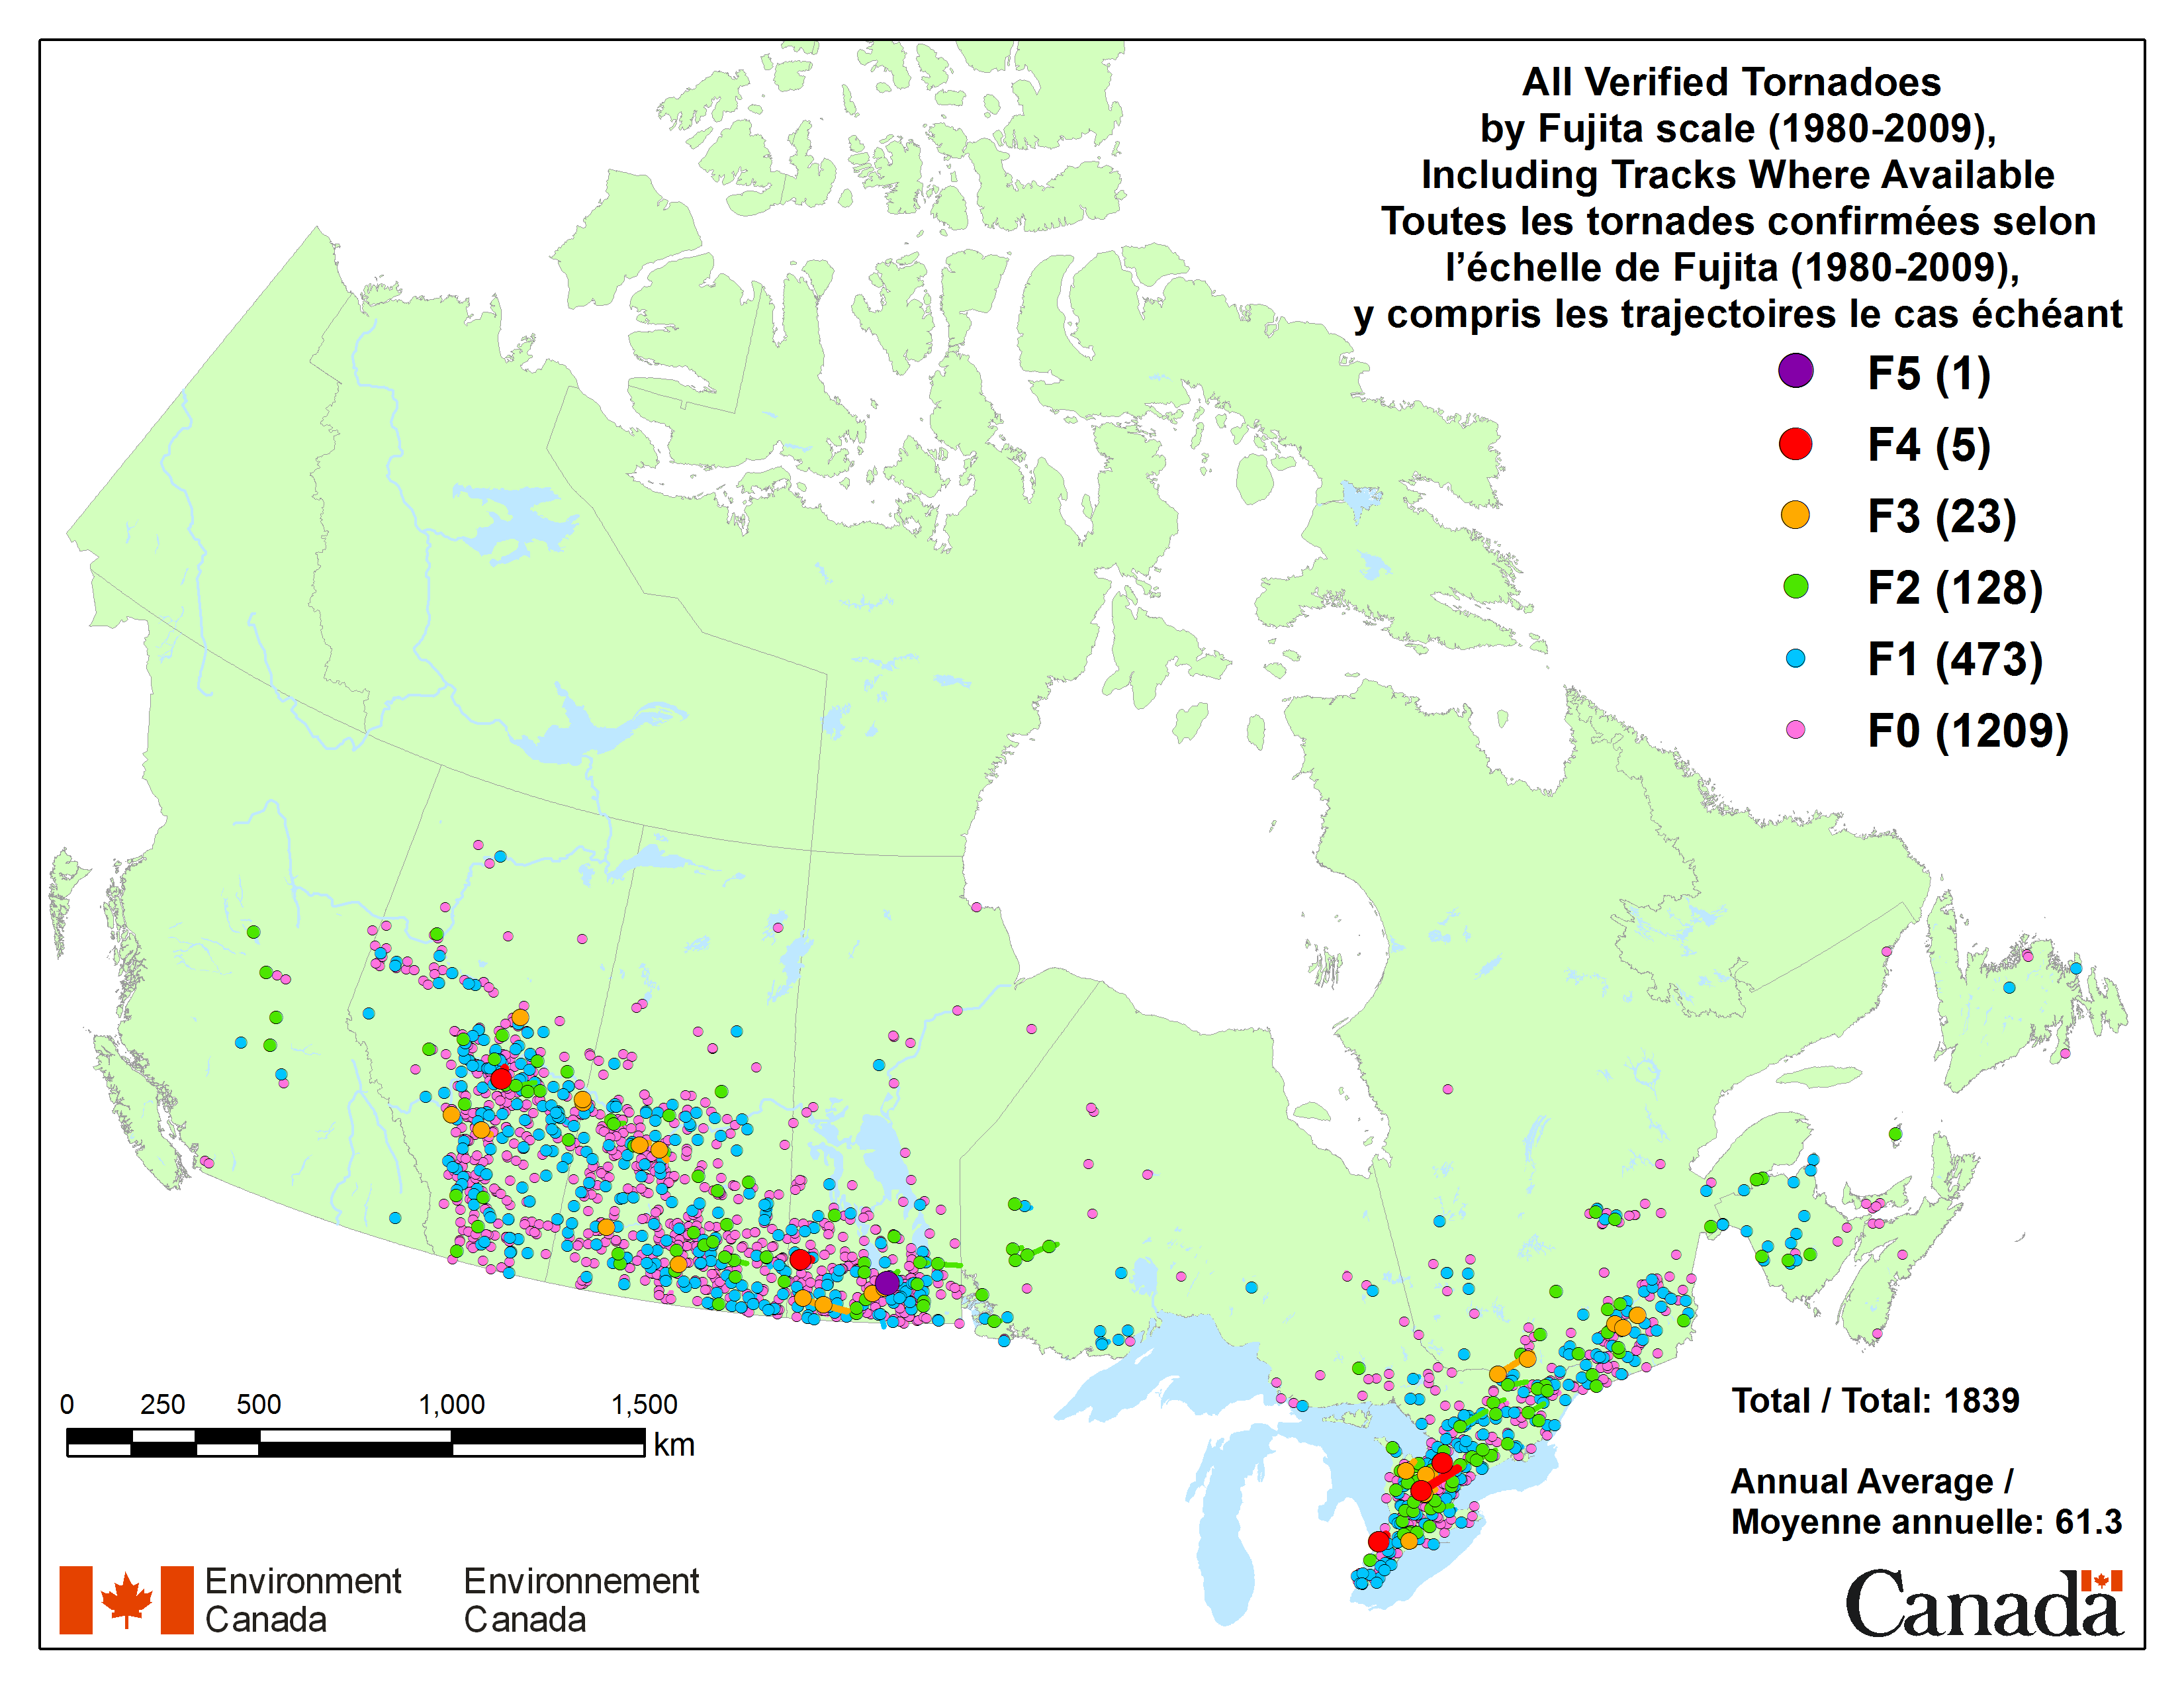 Carte géologique du Canada représentant les zones de tornades